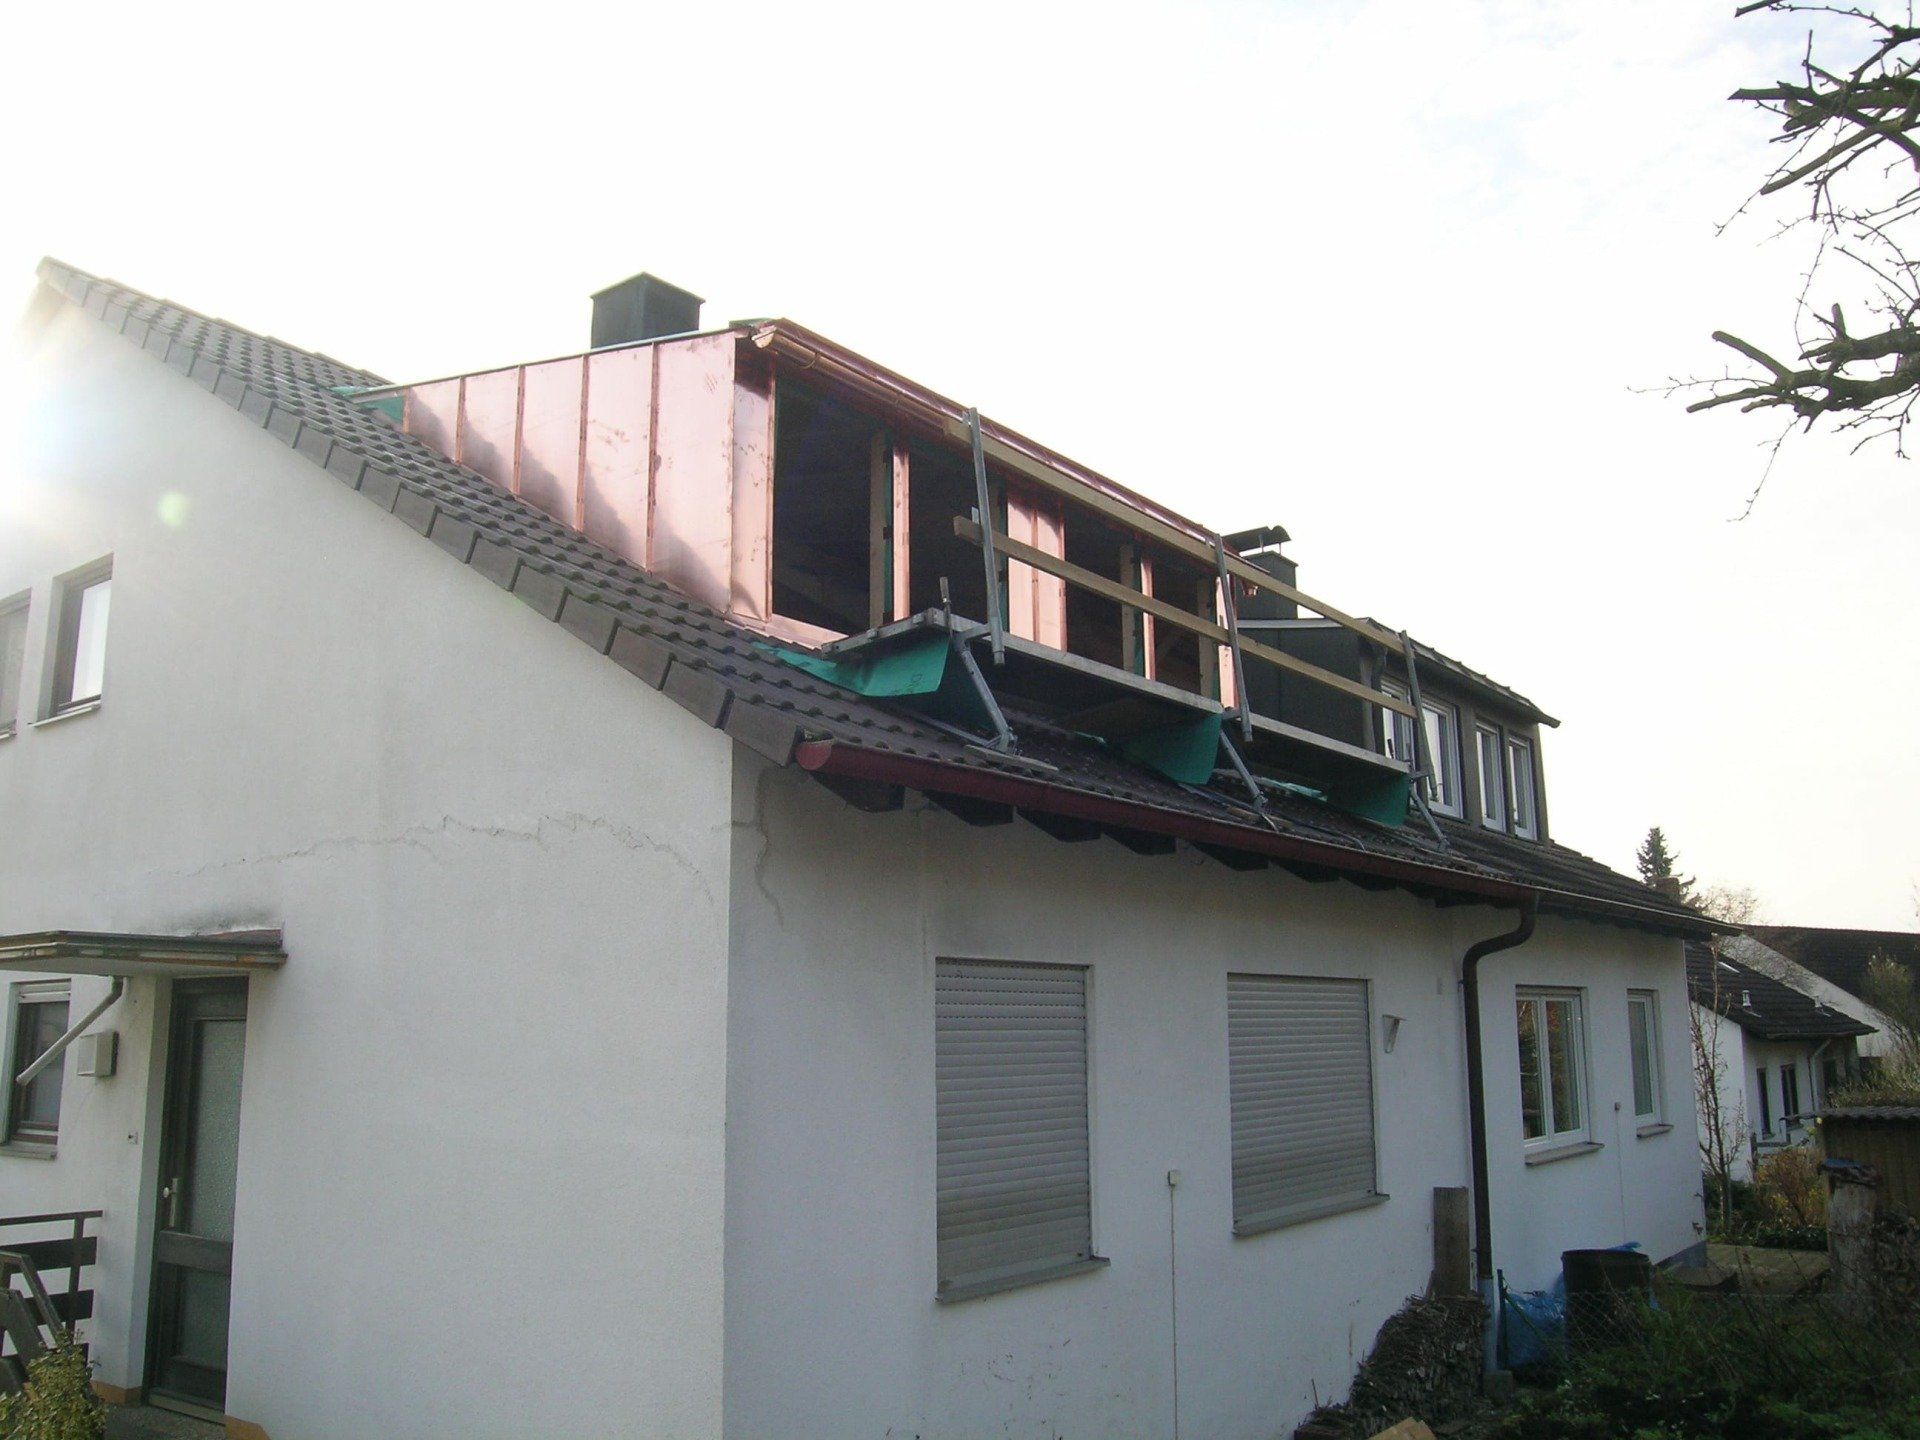 Holzdach und Dachfenster